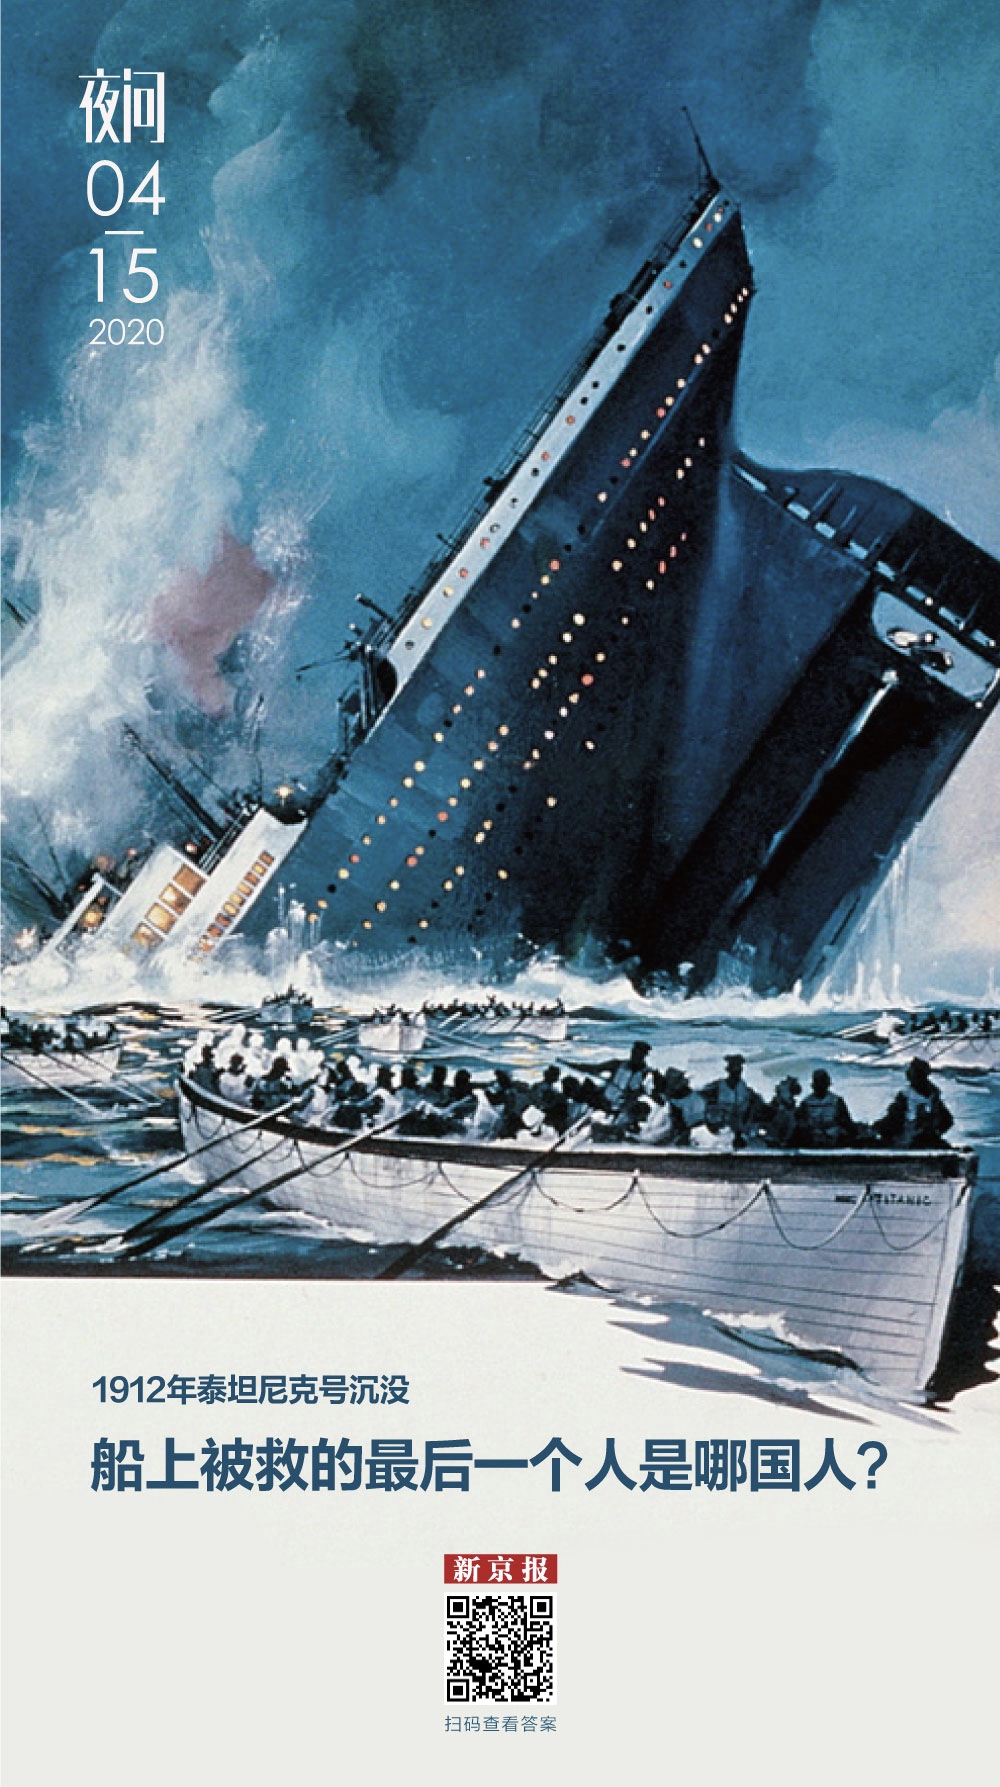 泰坦尼克号彩铅画图片